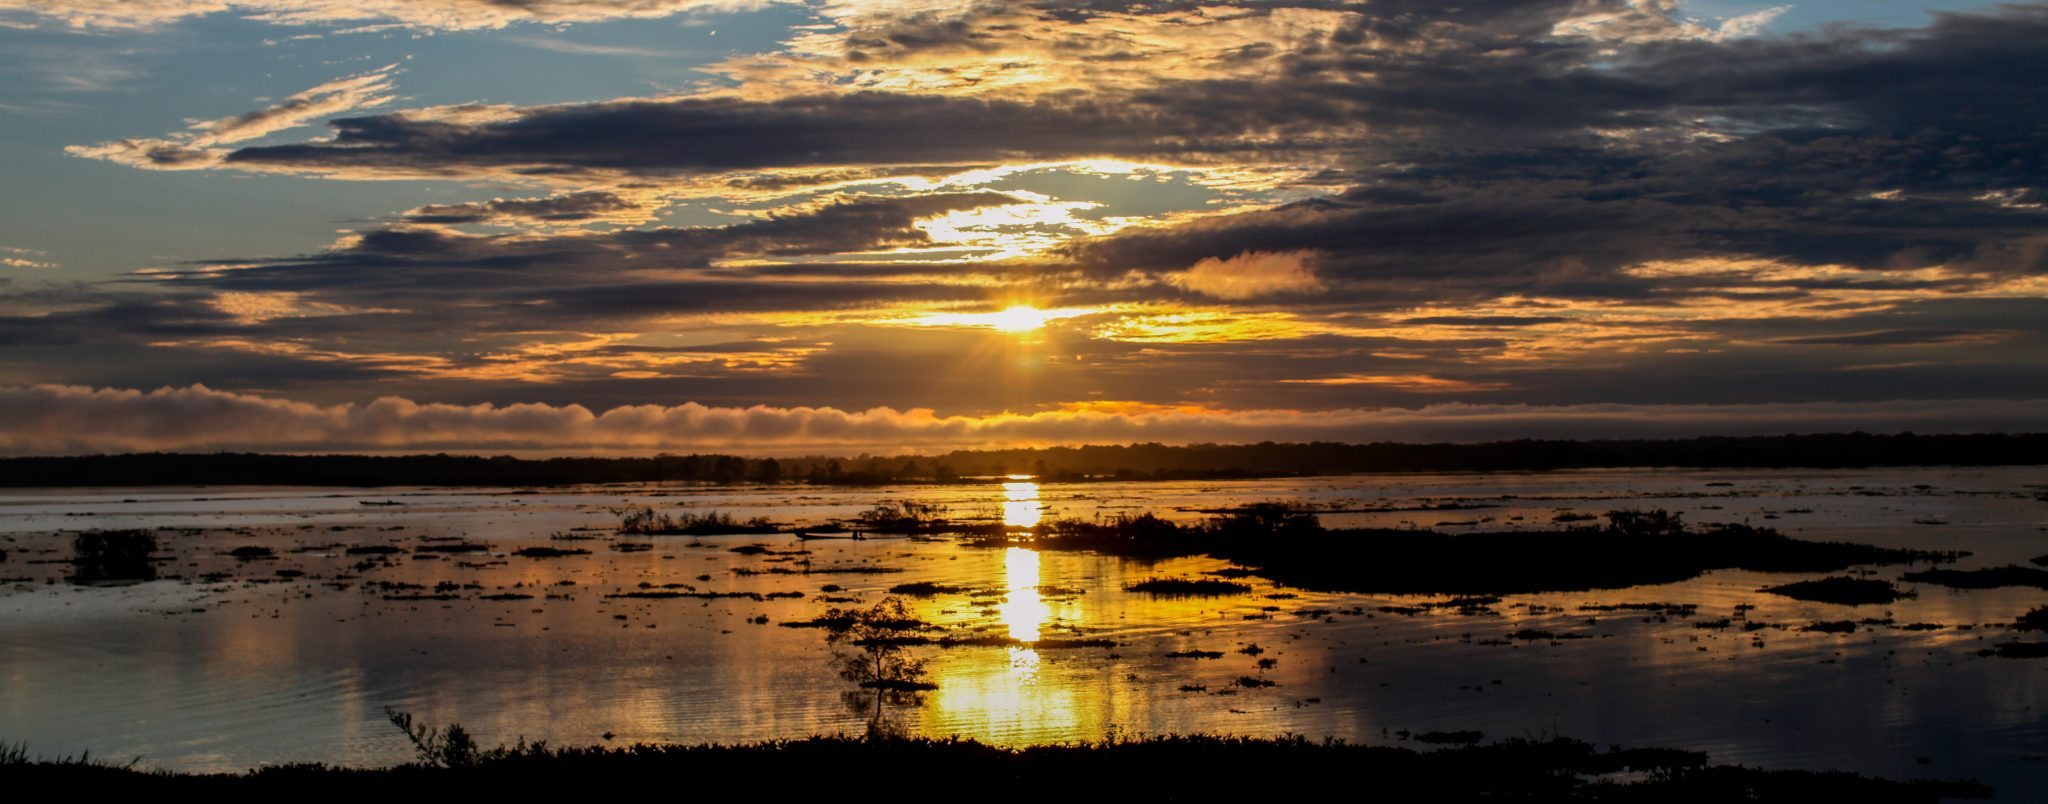 Sunrise on the Amazon. Near Iquitos, Peru. Photo credit: Yoho Media.